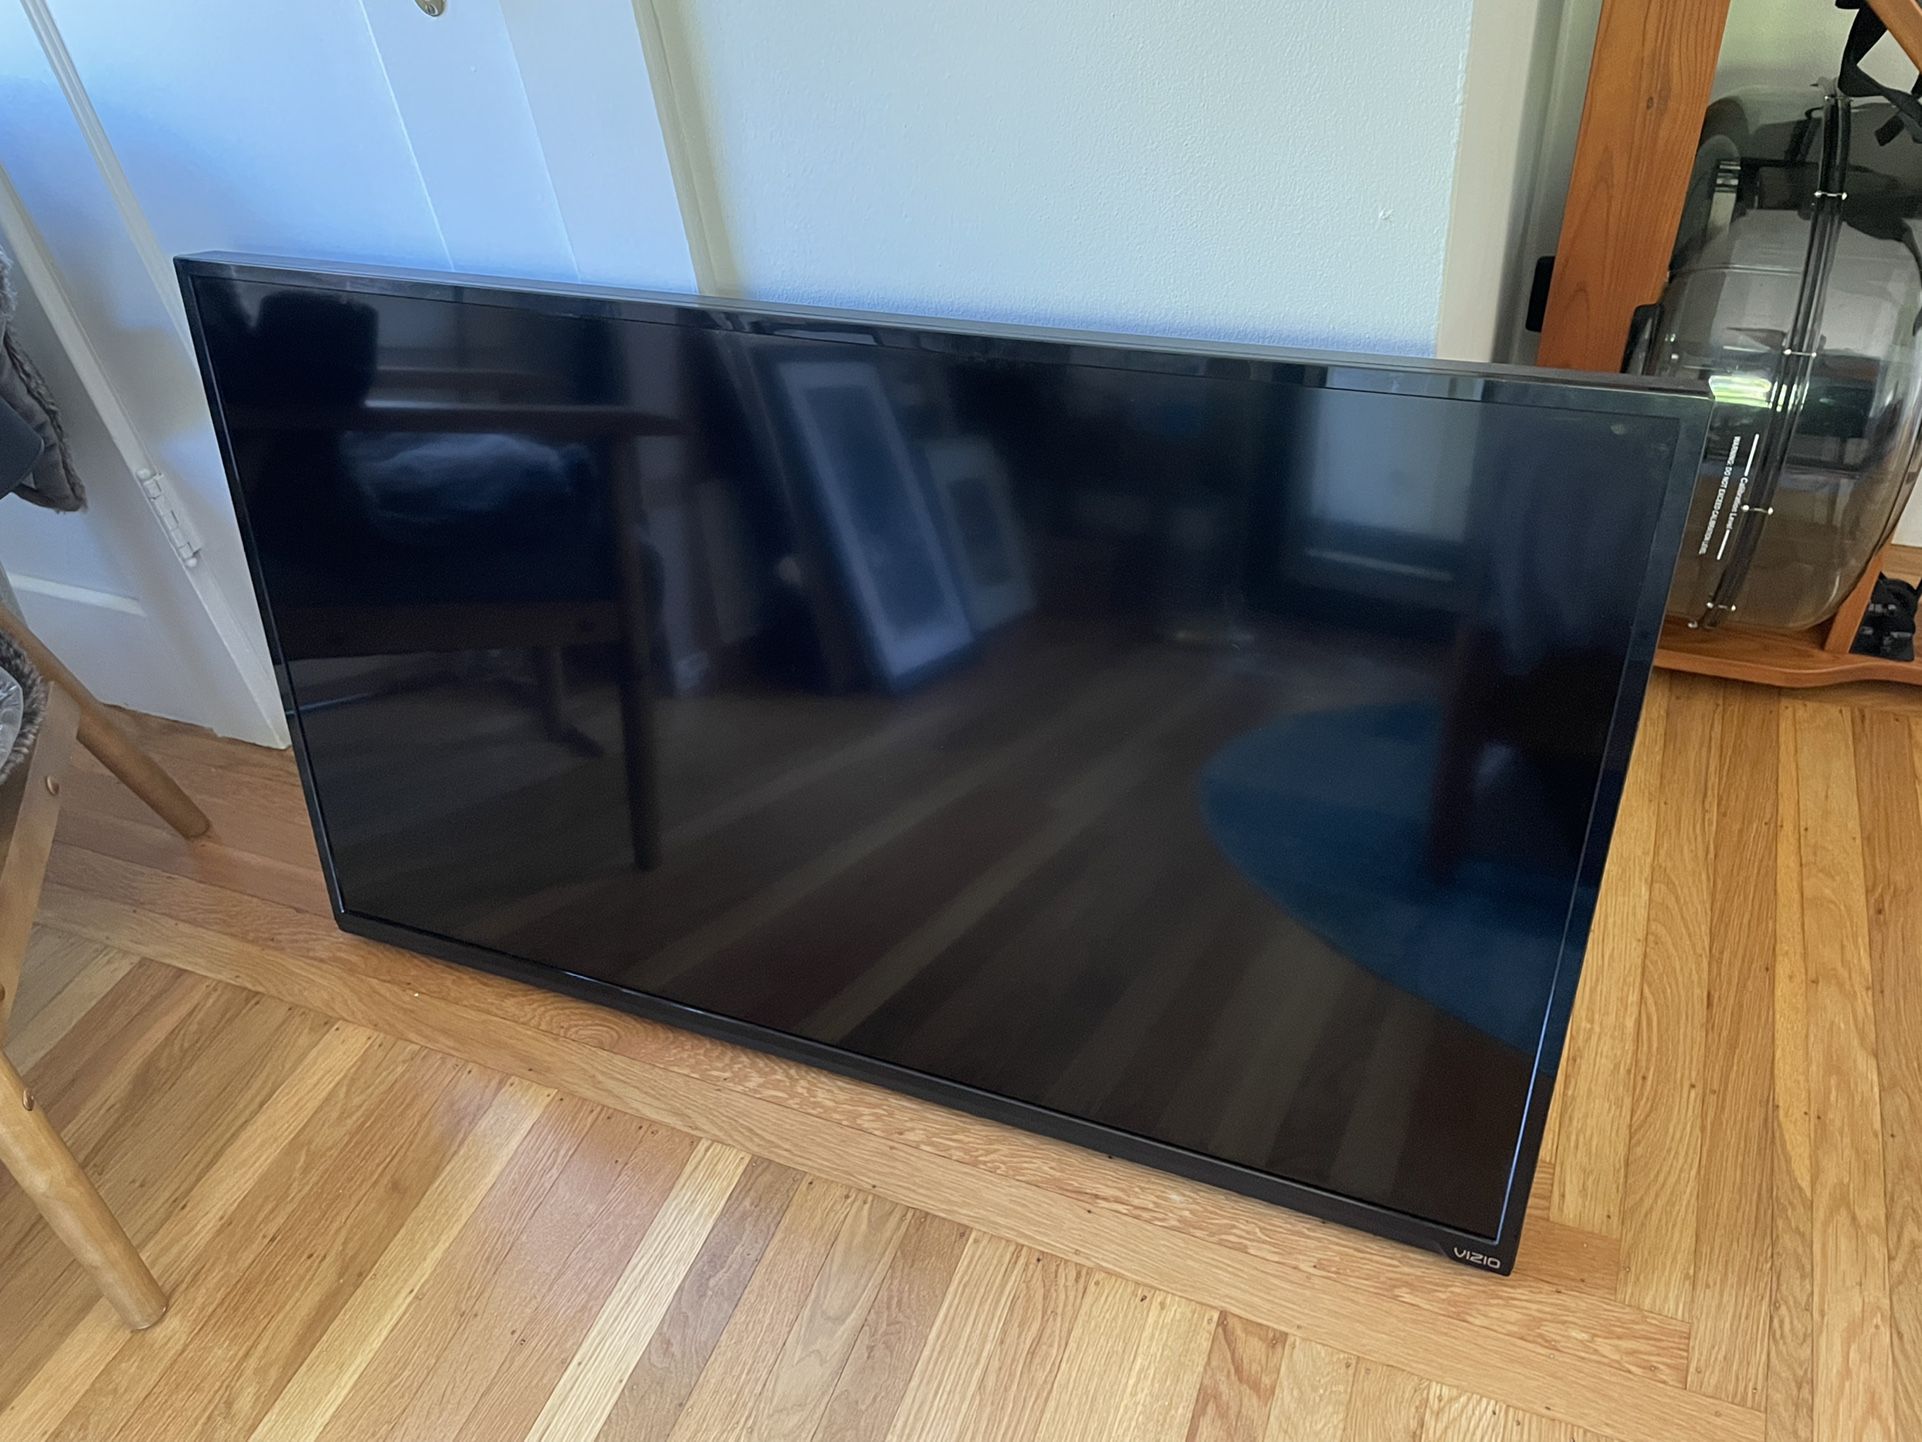 Vizio 50” LED Smart TV - Excellent condition!